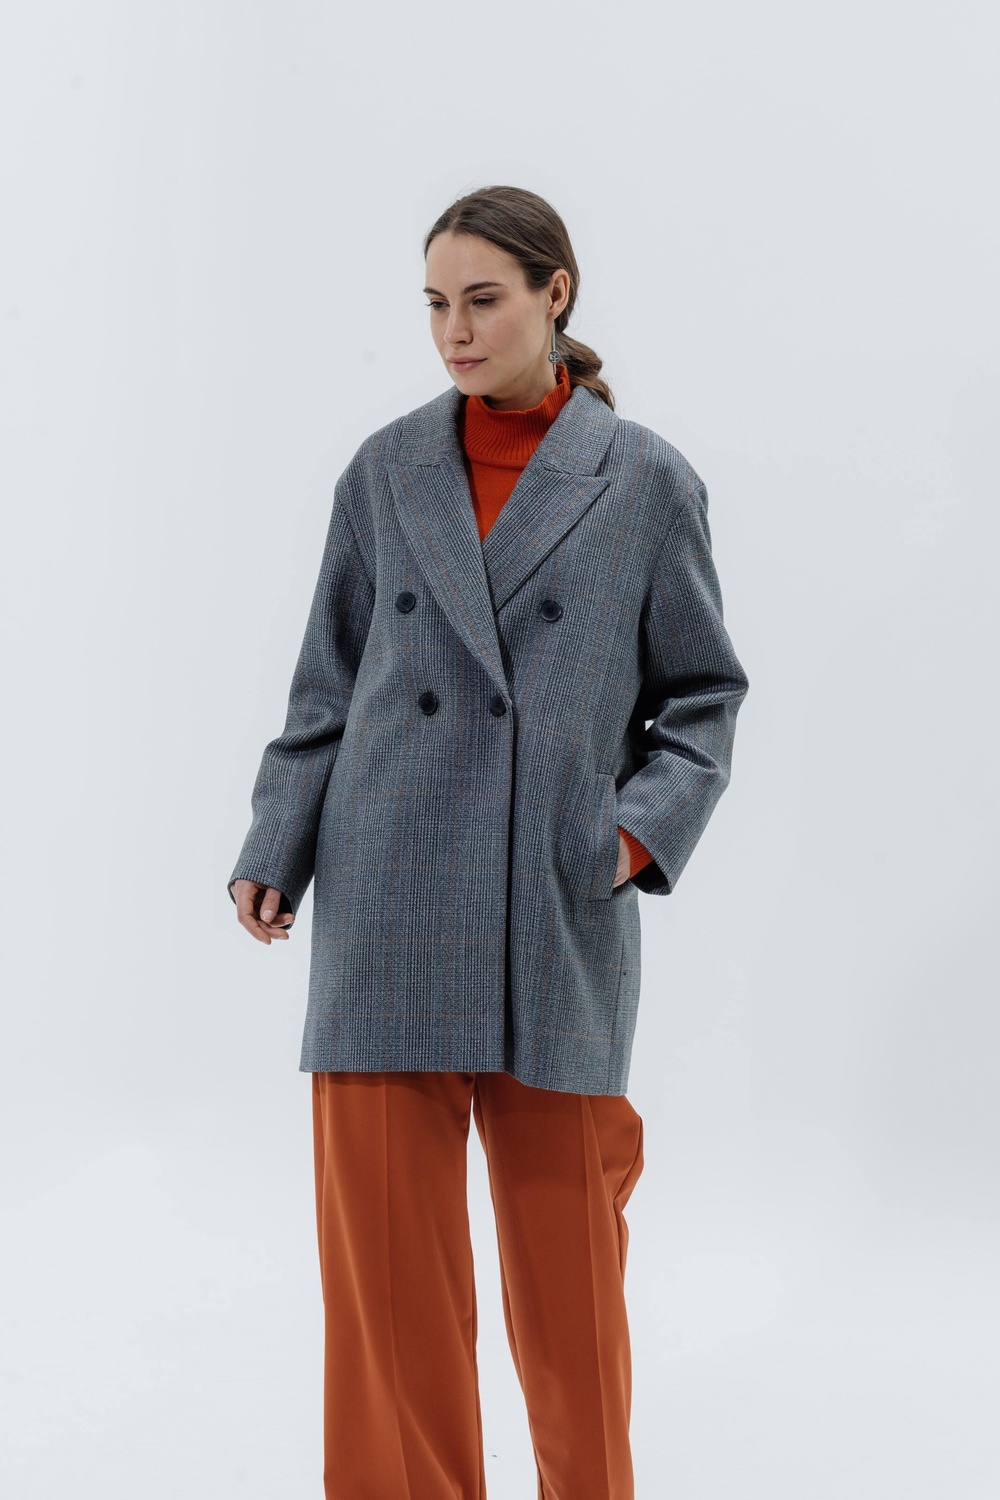 Пальто-жакет в чоловічому стилі з тонкої вовни сіро-помаранчова клітина 093_gray_orange_check фото